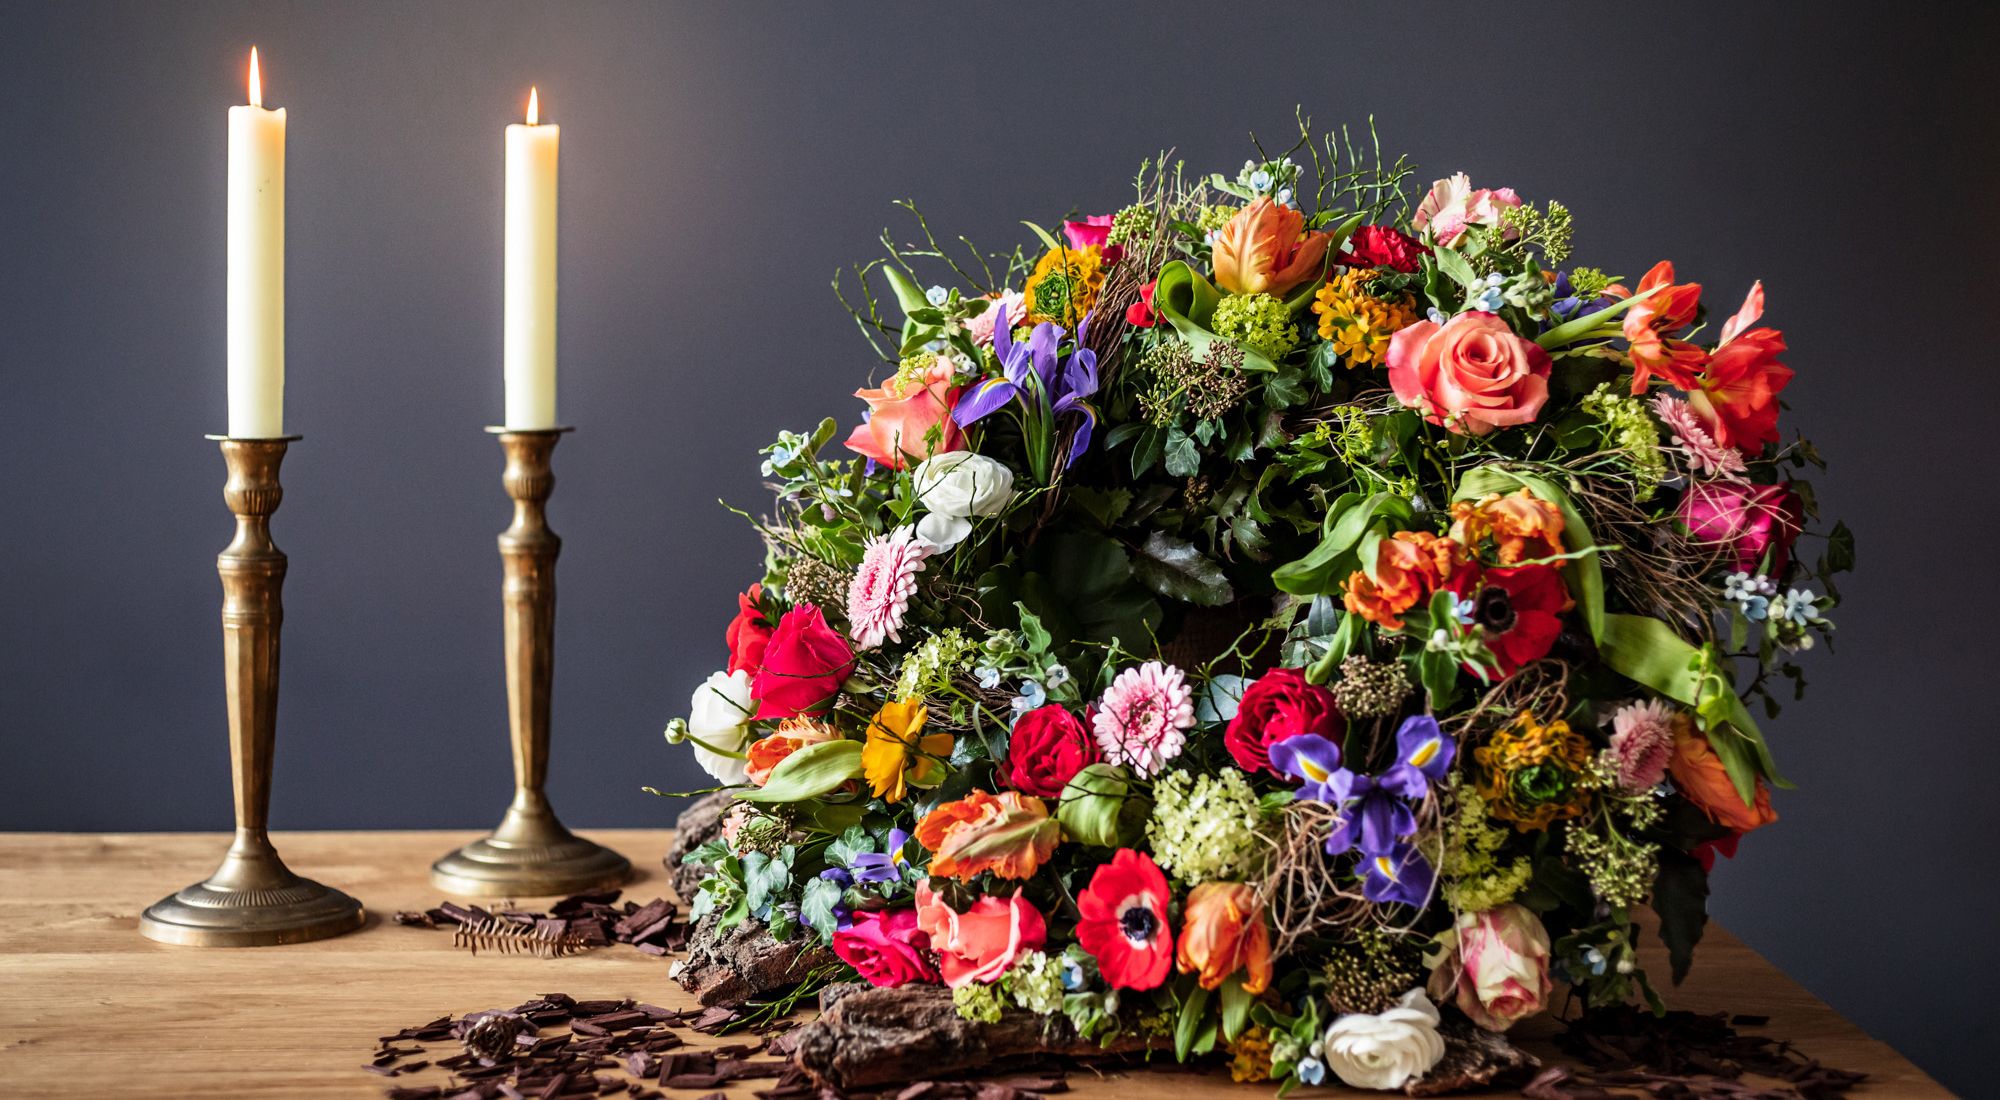 Trauerkranz mit bunten Blüten